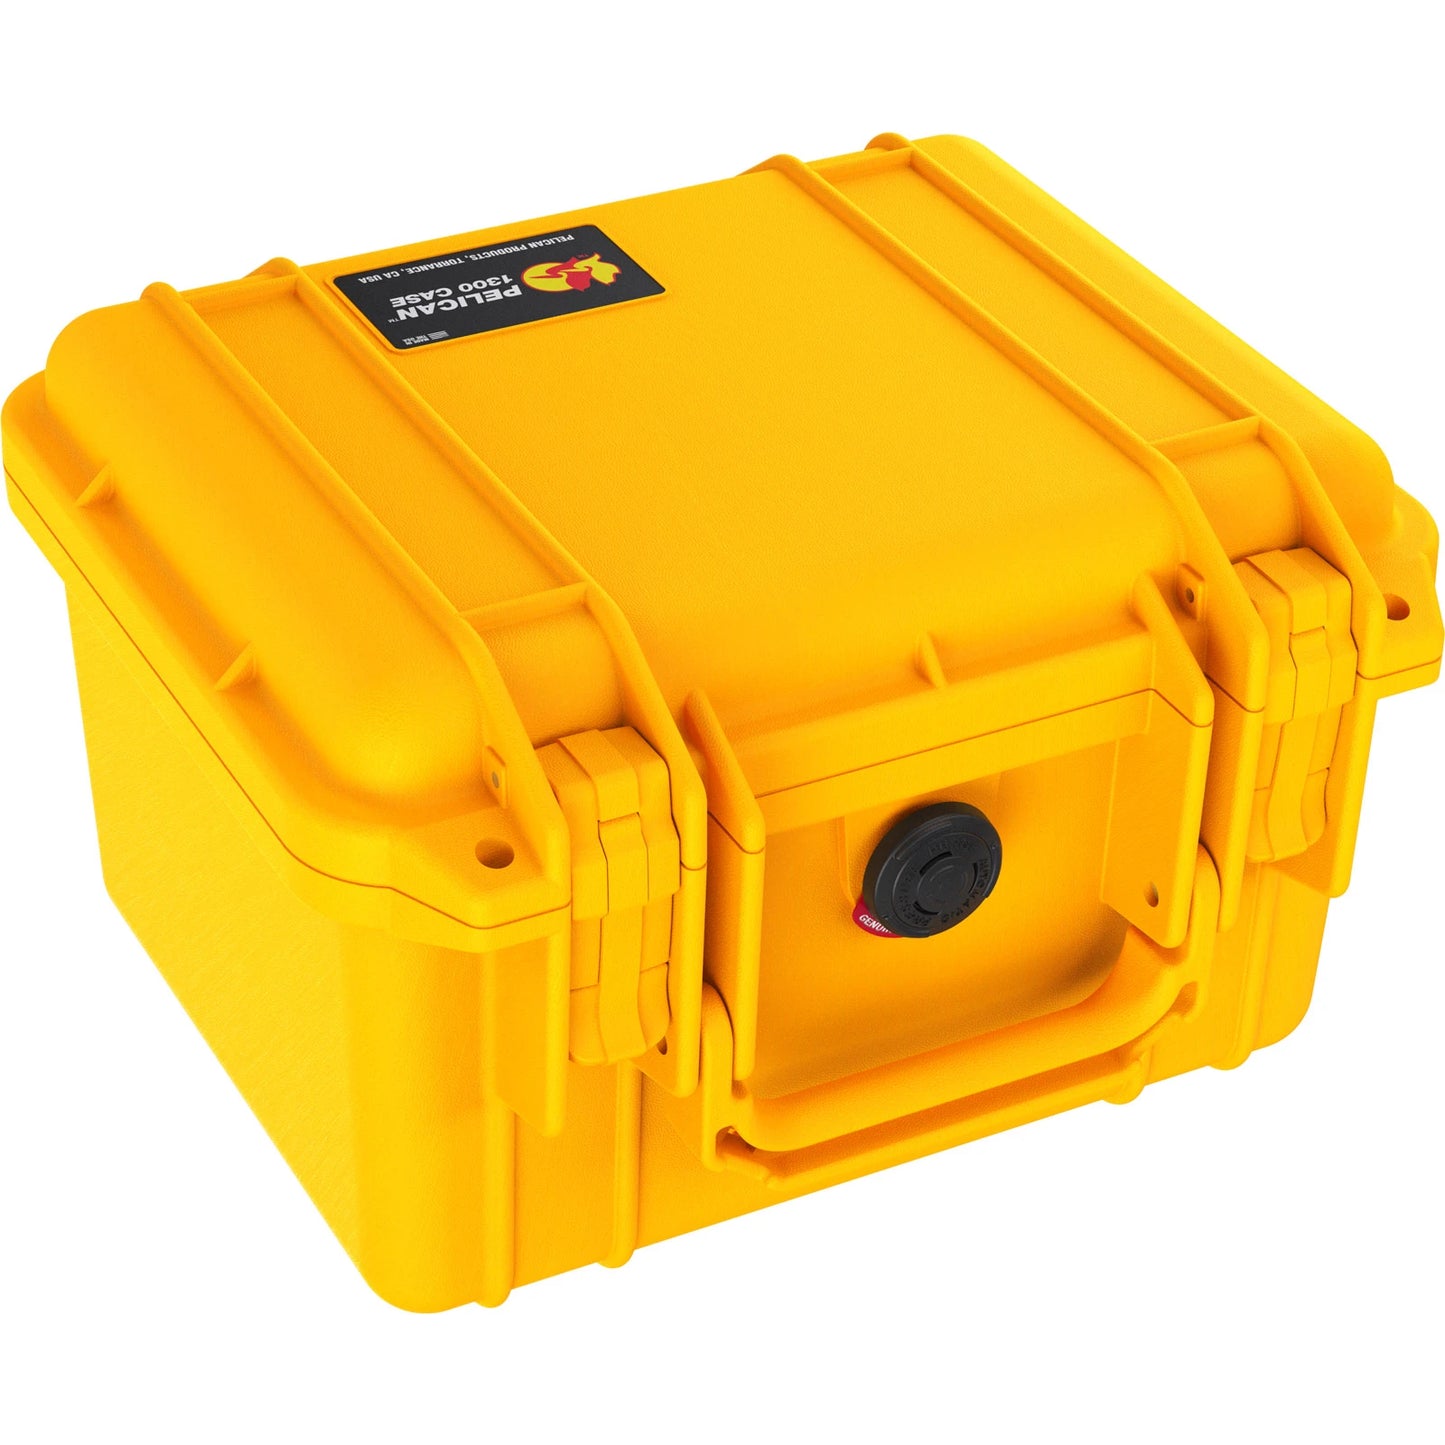 Pelican | 1300 Protector Waterproof, Crushproof & Dustproof Case